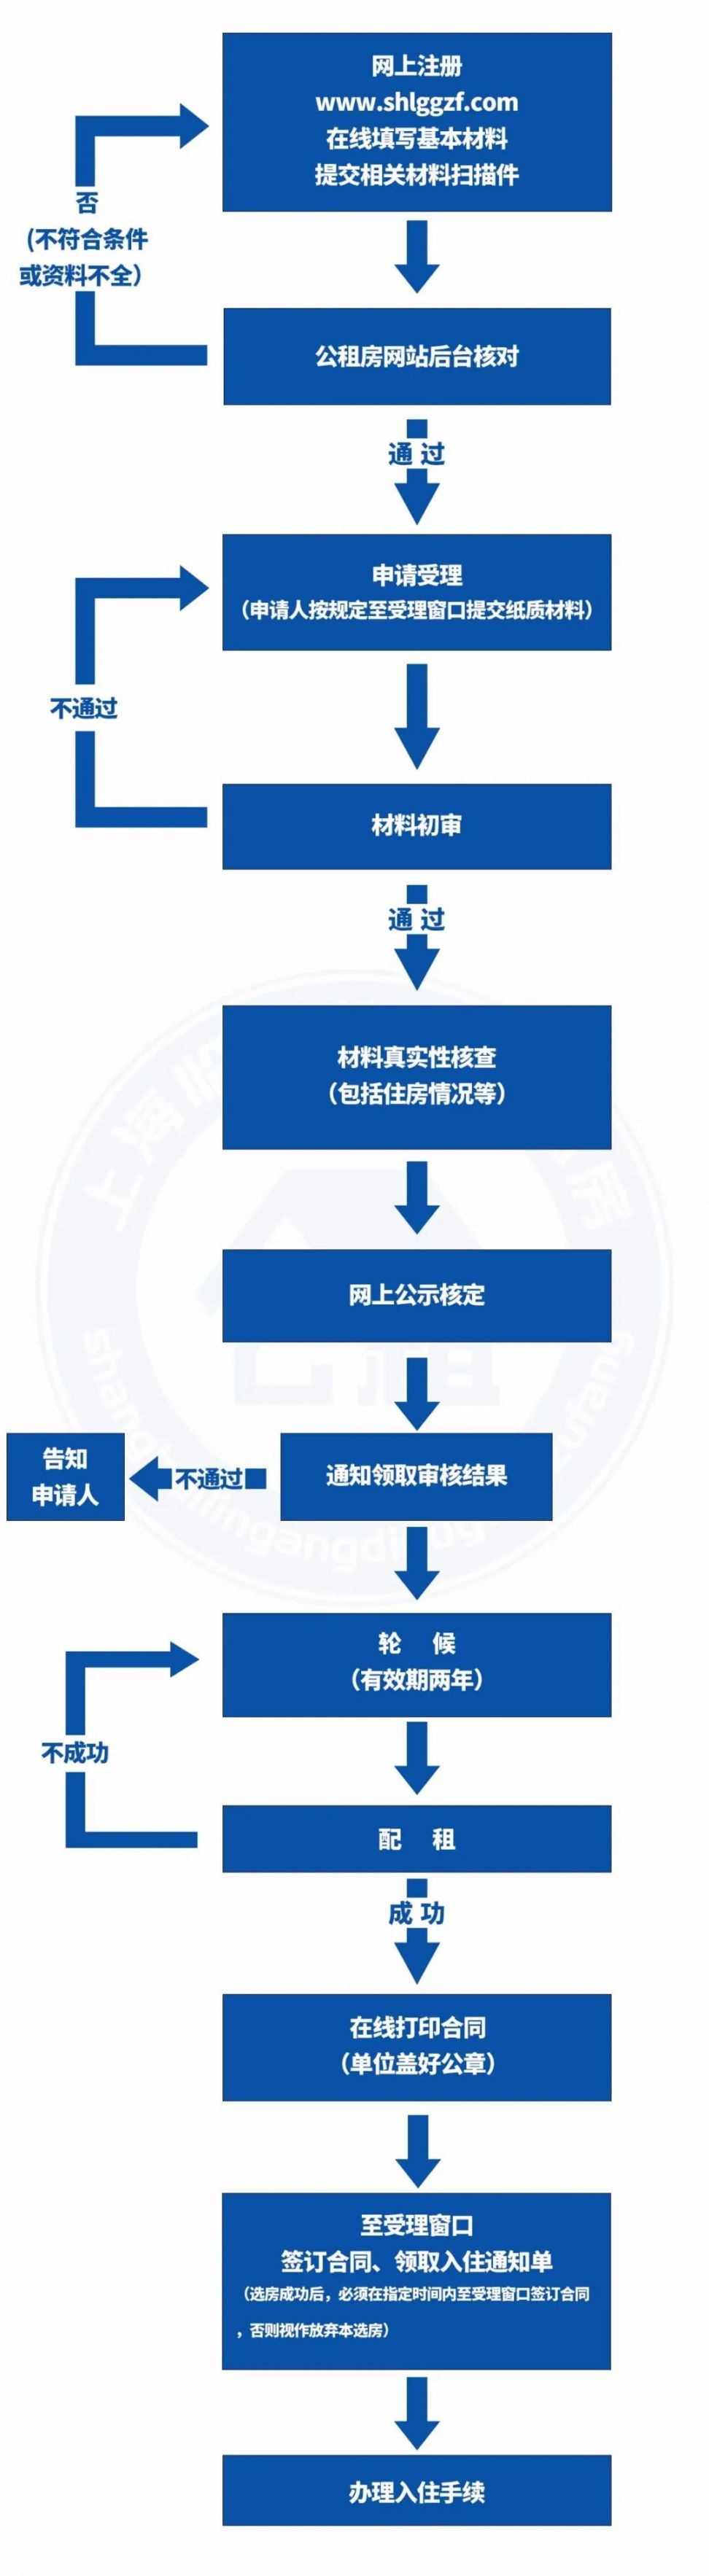 上海临港公租房申请流程图